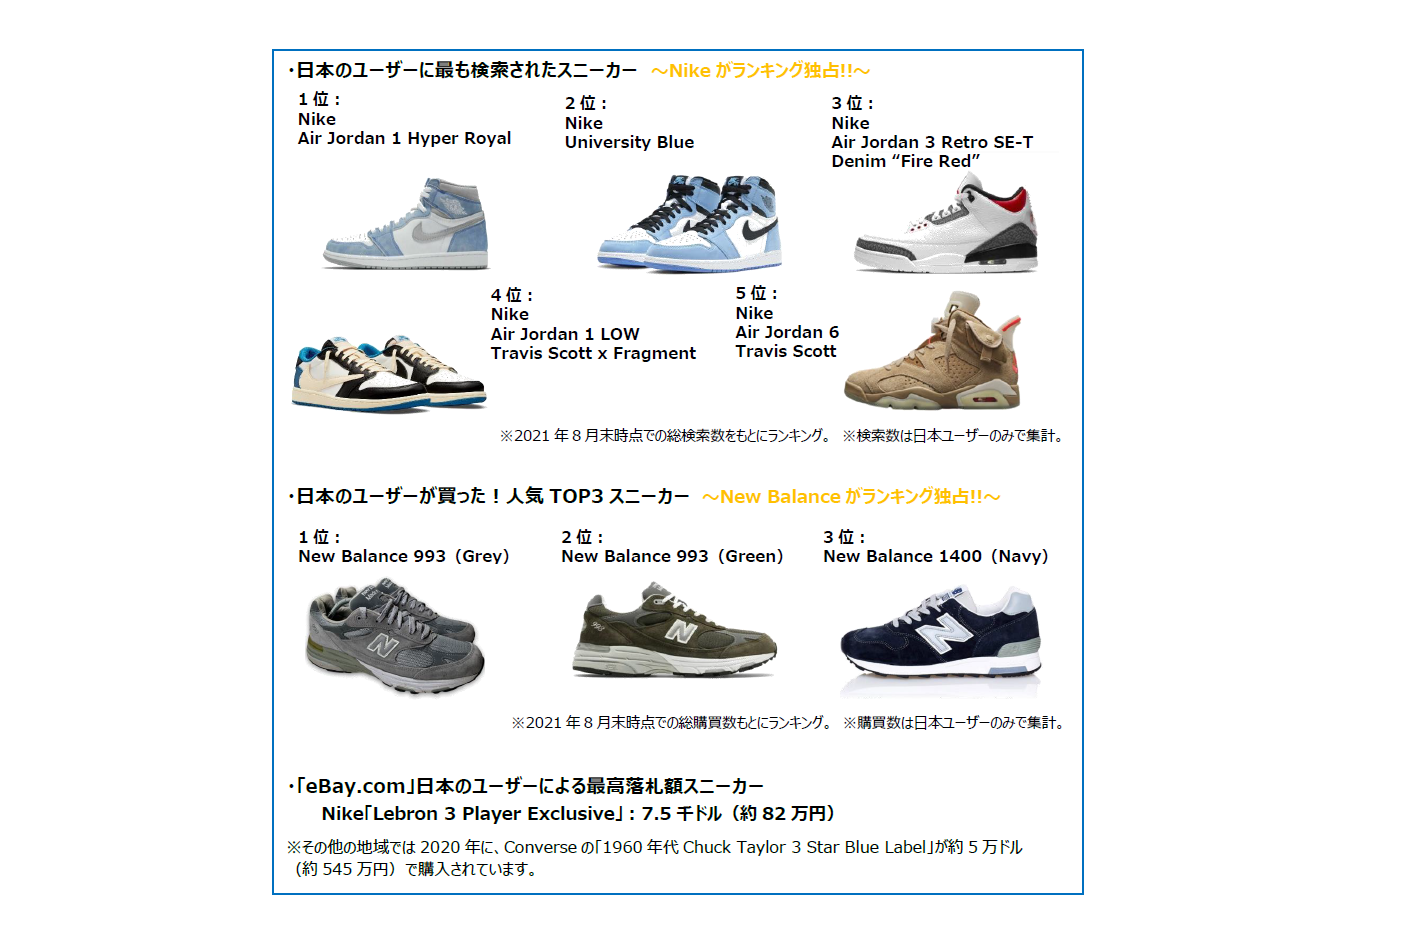 Ebay 日本ユーザーのスニーカー動向を報告 日本からの検索数は ナイキ 購入数は ニューバランス が独占 シューズポストオンライン シューズ専門の総合情報サイト